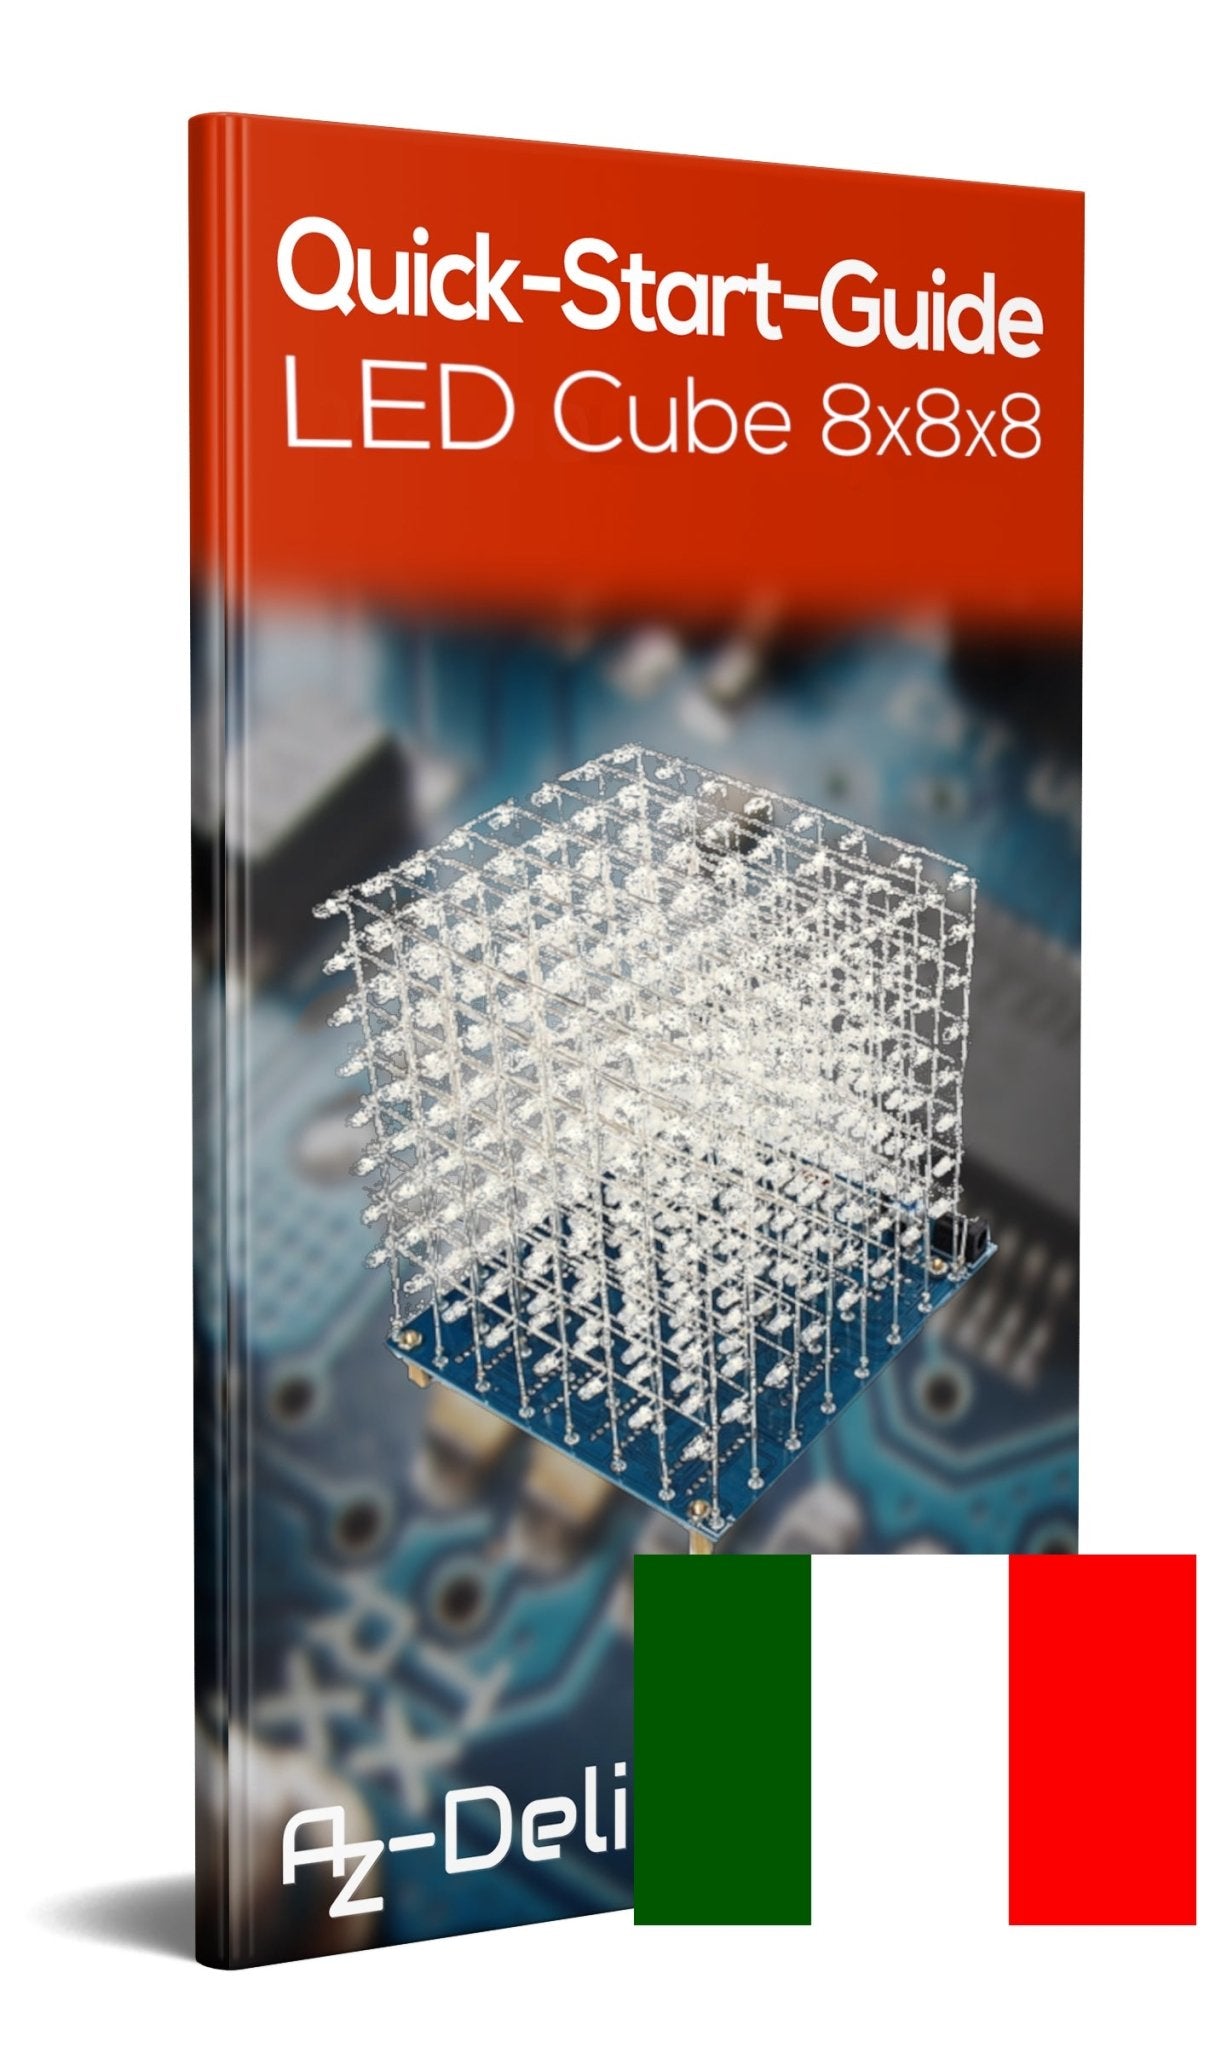 3D LED Cube 8x8x8 matrice de Lumière Cube Kit pour souder